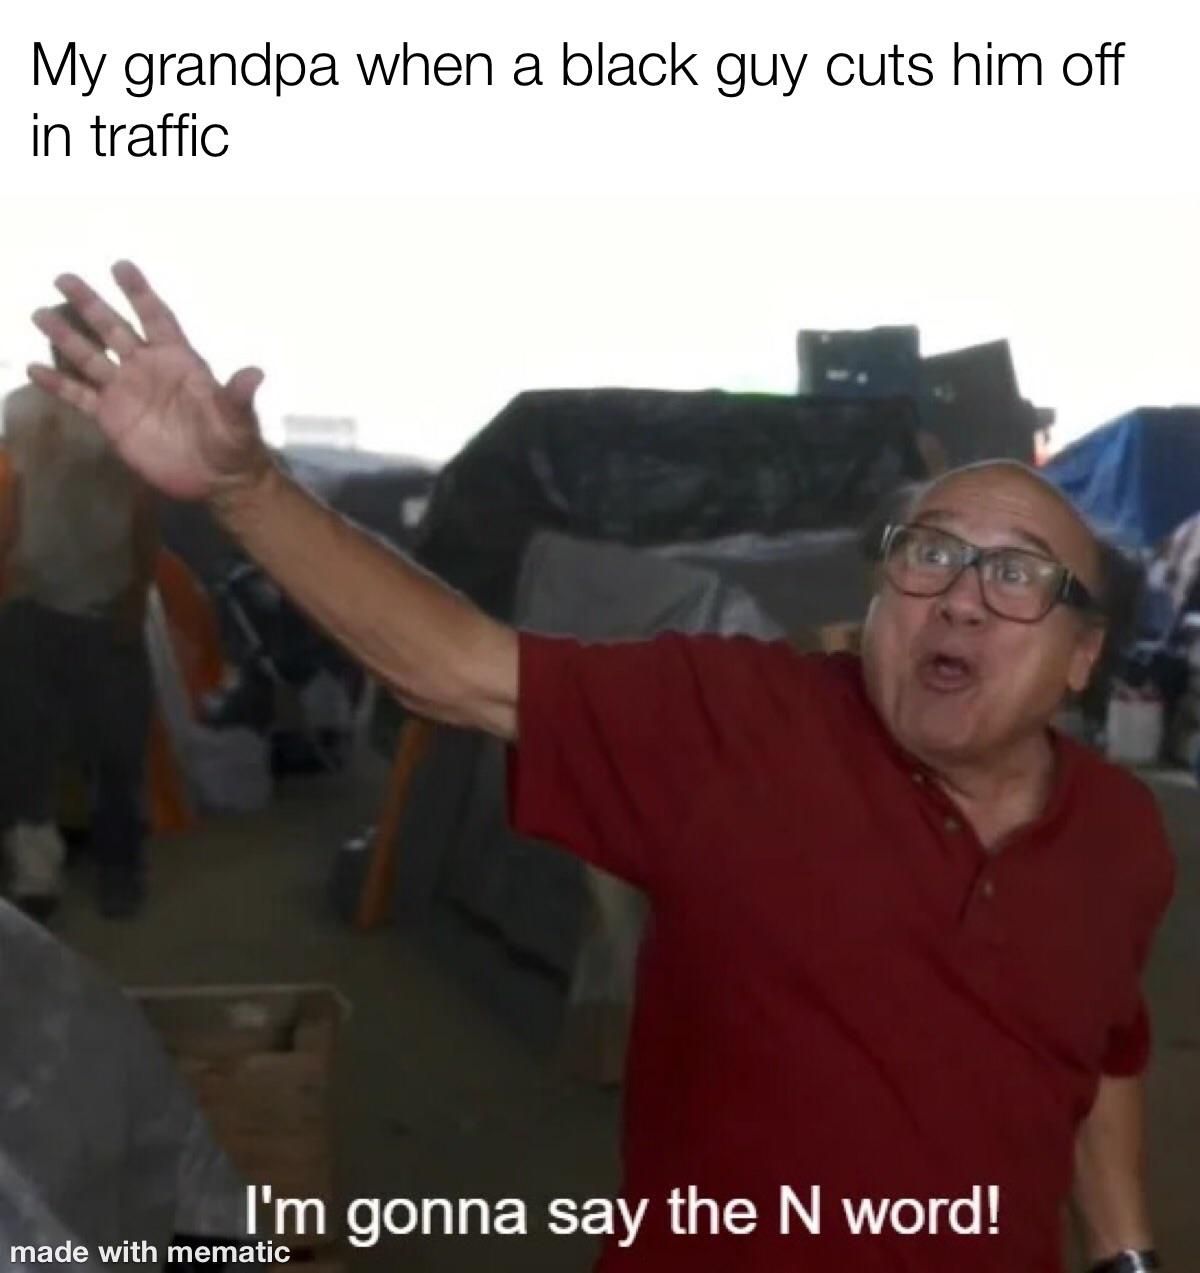 Grandpa, no!